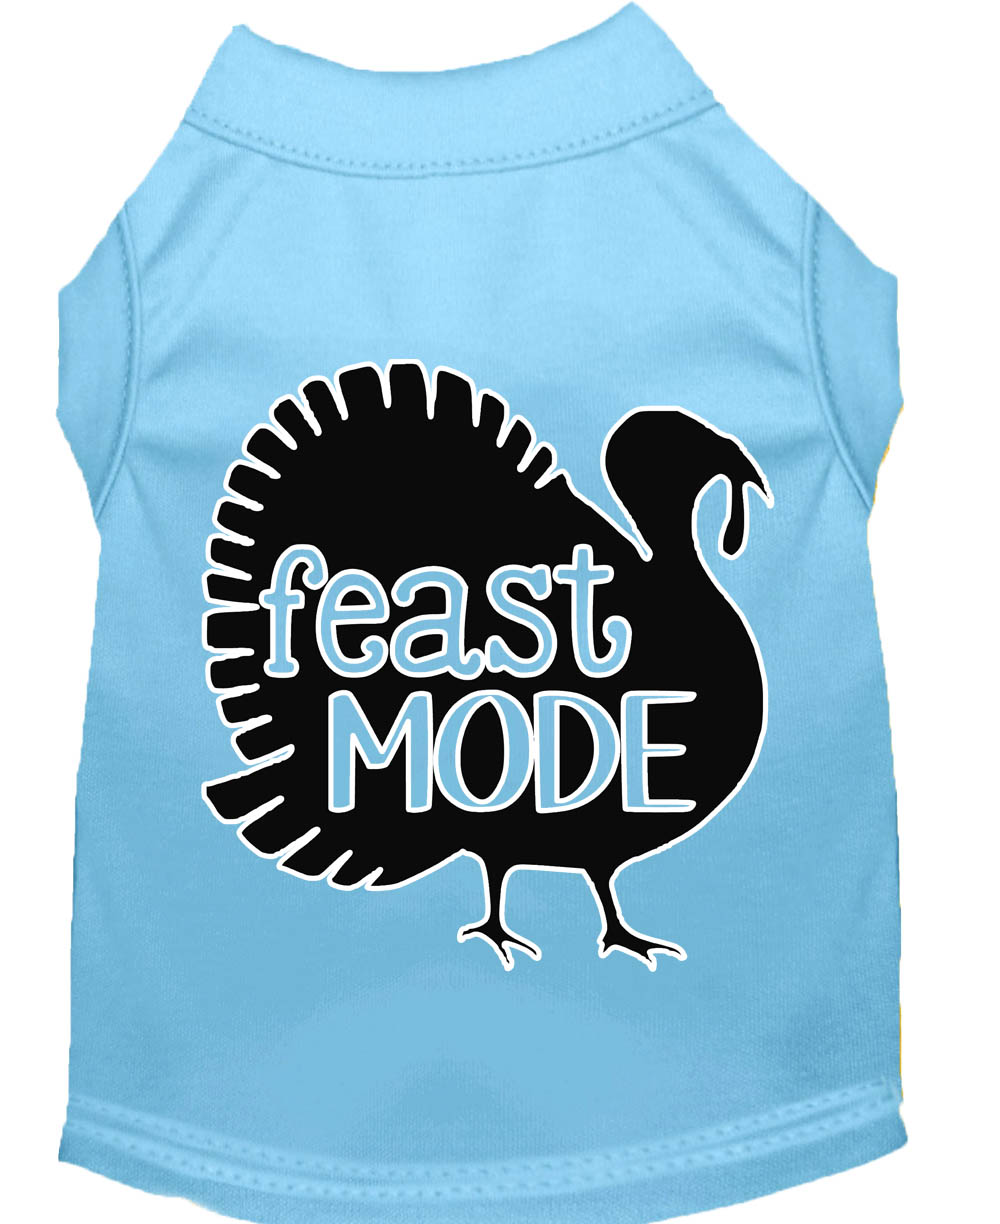 Feast Mode Screen Print Dog Shirt Baby Blue XL